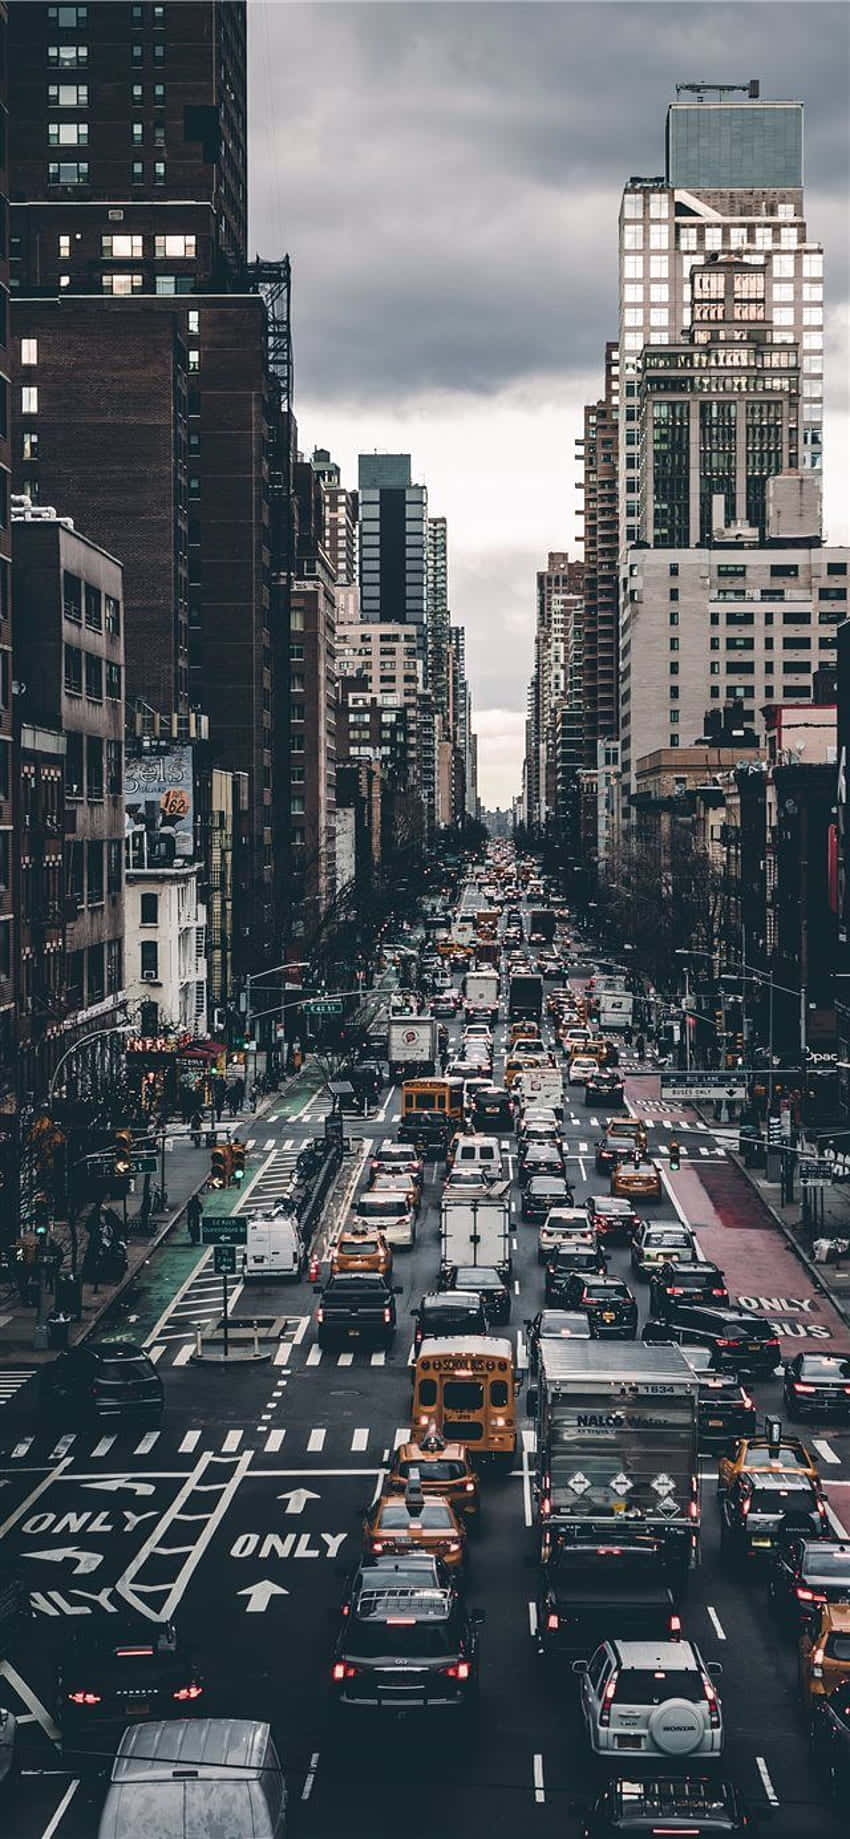 Upptagenbakgrundsbild För Android-resa Med New York Citys Livliga Gator.